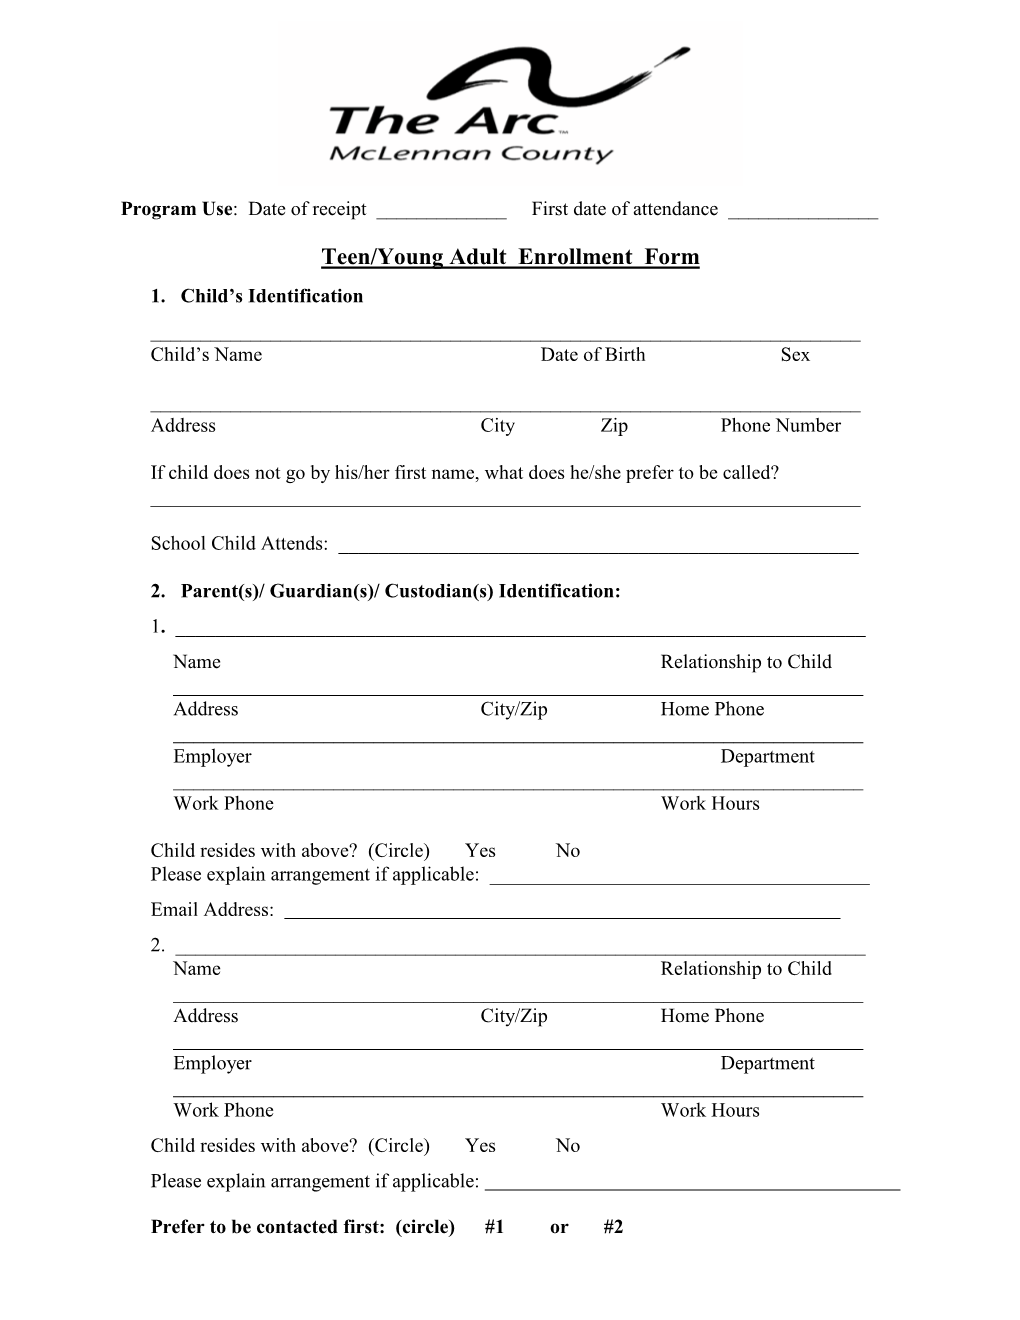 Teen/Young Adult Enrollment Form 1